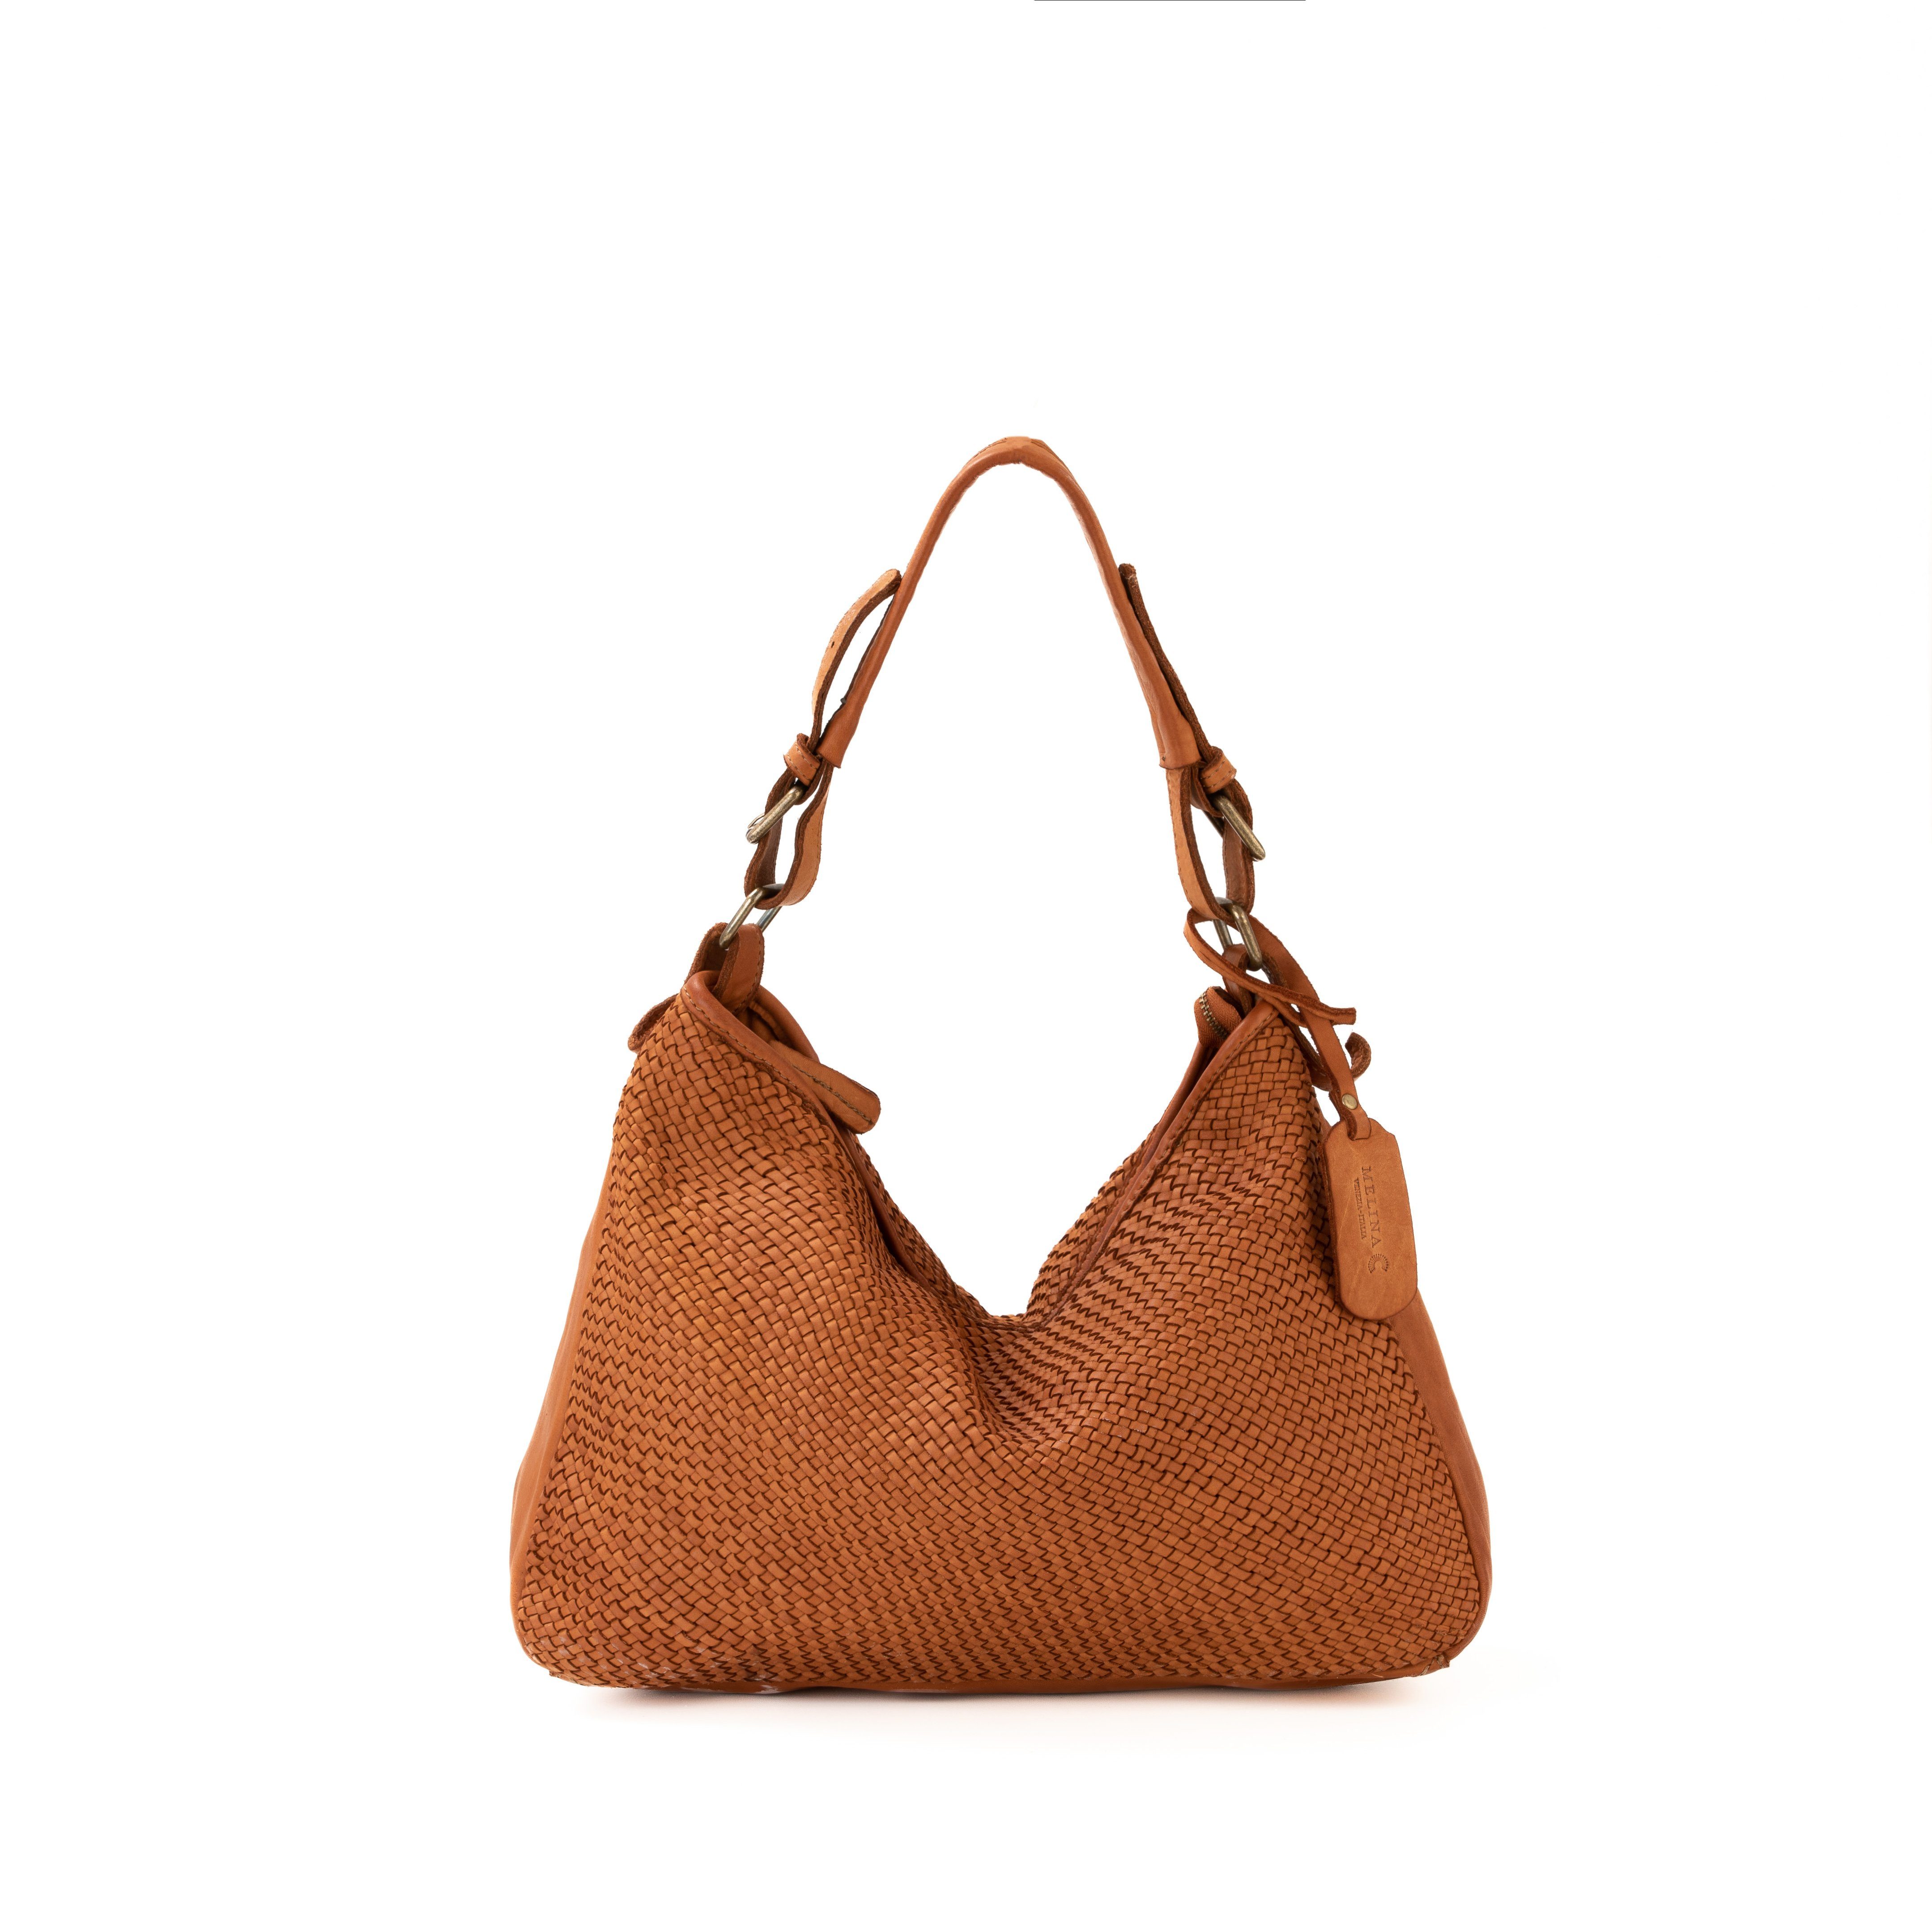 Melina C Handtasche Calenzano - Handtasche und convertible Rucksacktasche, Wandelbar als Handtasche und Taschenrucksack verwendbar